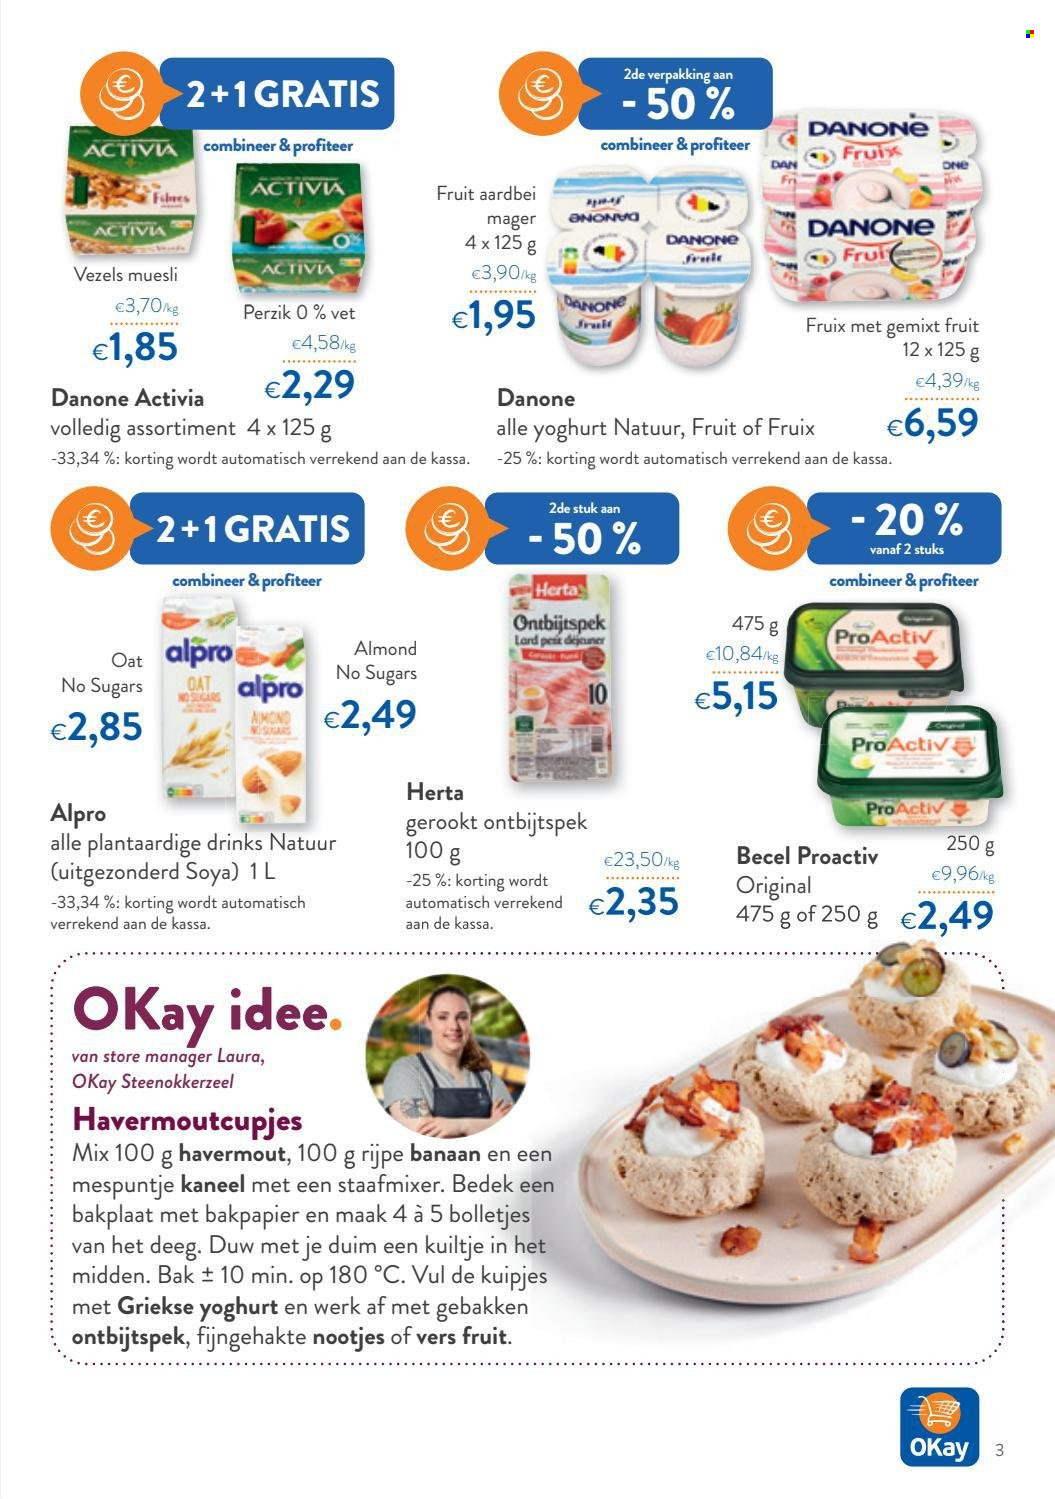 thumbnail - OKay-aanbieding - 12/01/2022 - 25/01/2022 -  producten in de aanbieding - banaan, perzik, ontbijtspek, Danone, yoghurt, griekse yoghurt, Activia, lard, havermout, kaneel. Pagina 3.